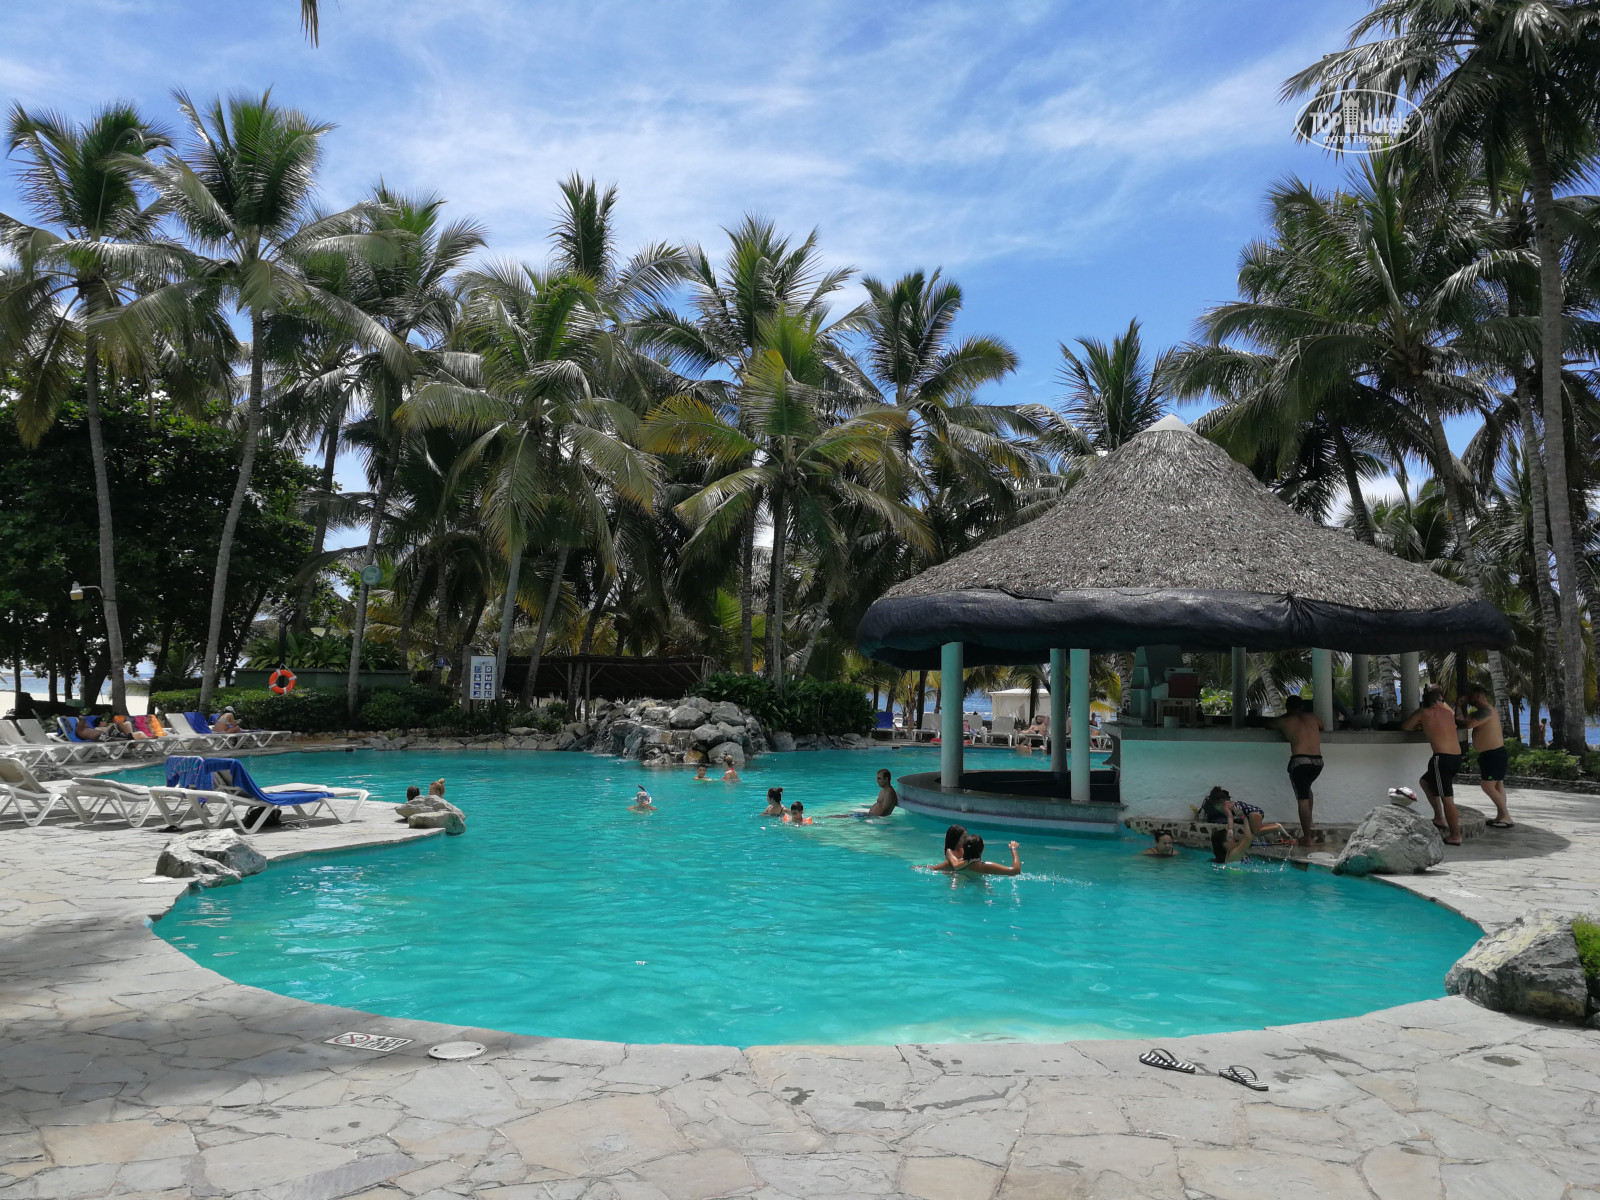 Costa caribe beach hotel 3. Costa Caribe Beach Hotel Resort 4 Венесуэла. Costa Caribe Beach Hotel & Resort 3*.